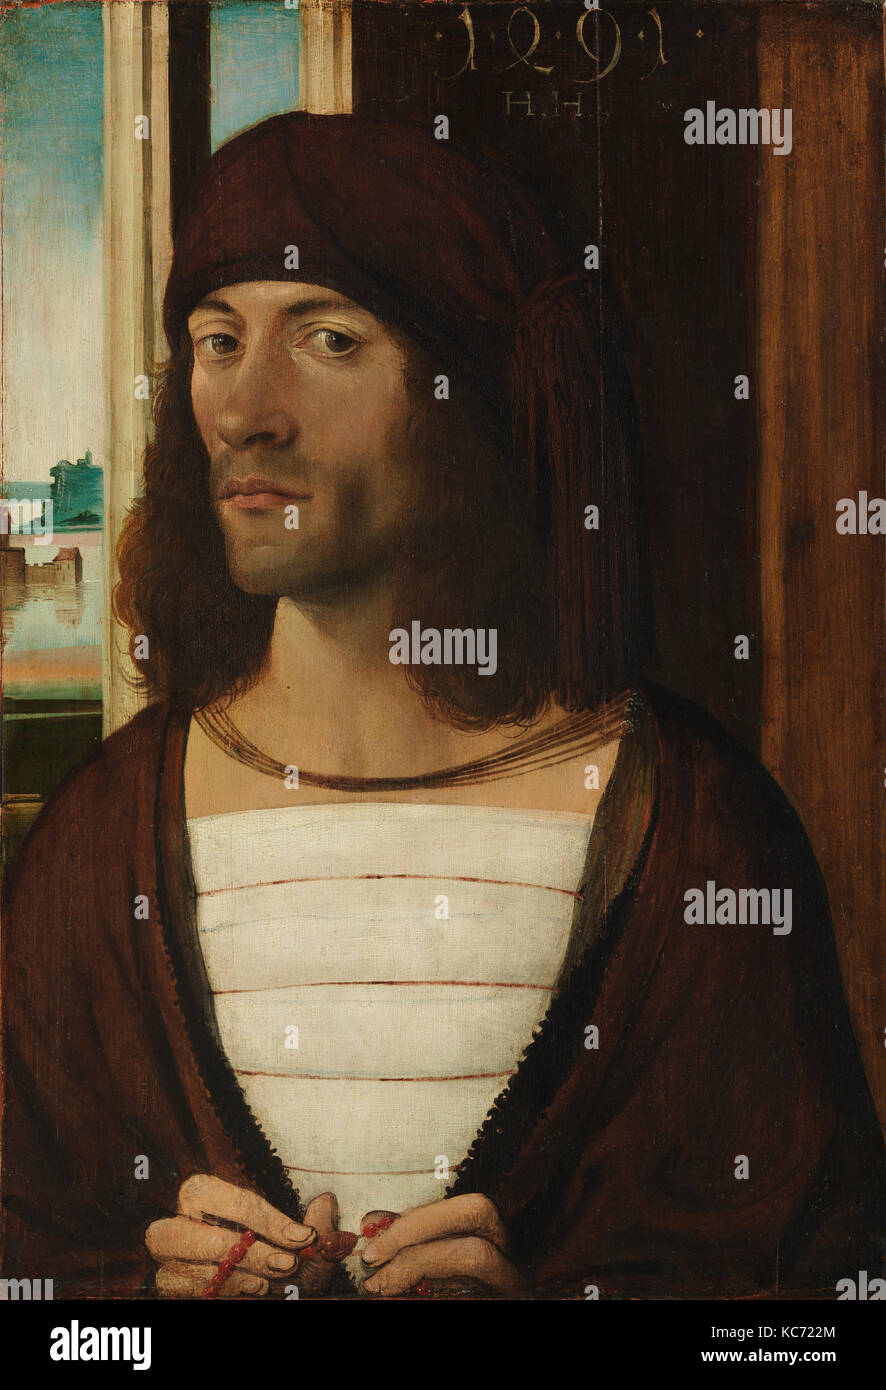 Portrait d'un homme, 1491, huile sur tilleul, 18 3/4 x 13 in. (47,6 x 33 cm), peintures, Allemand (Nuremberg) Peintre (fin du 15e siècle Banque D'Images